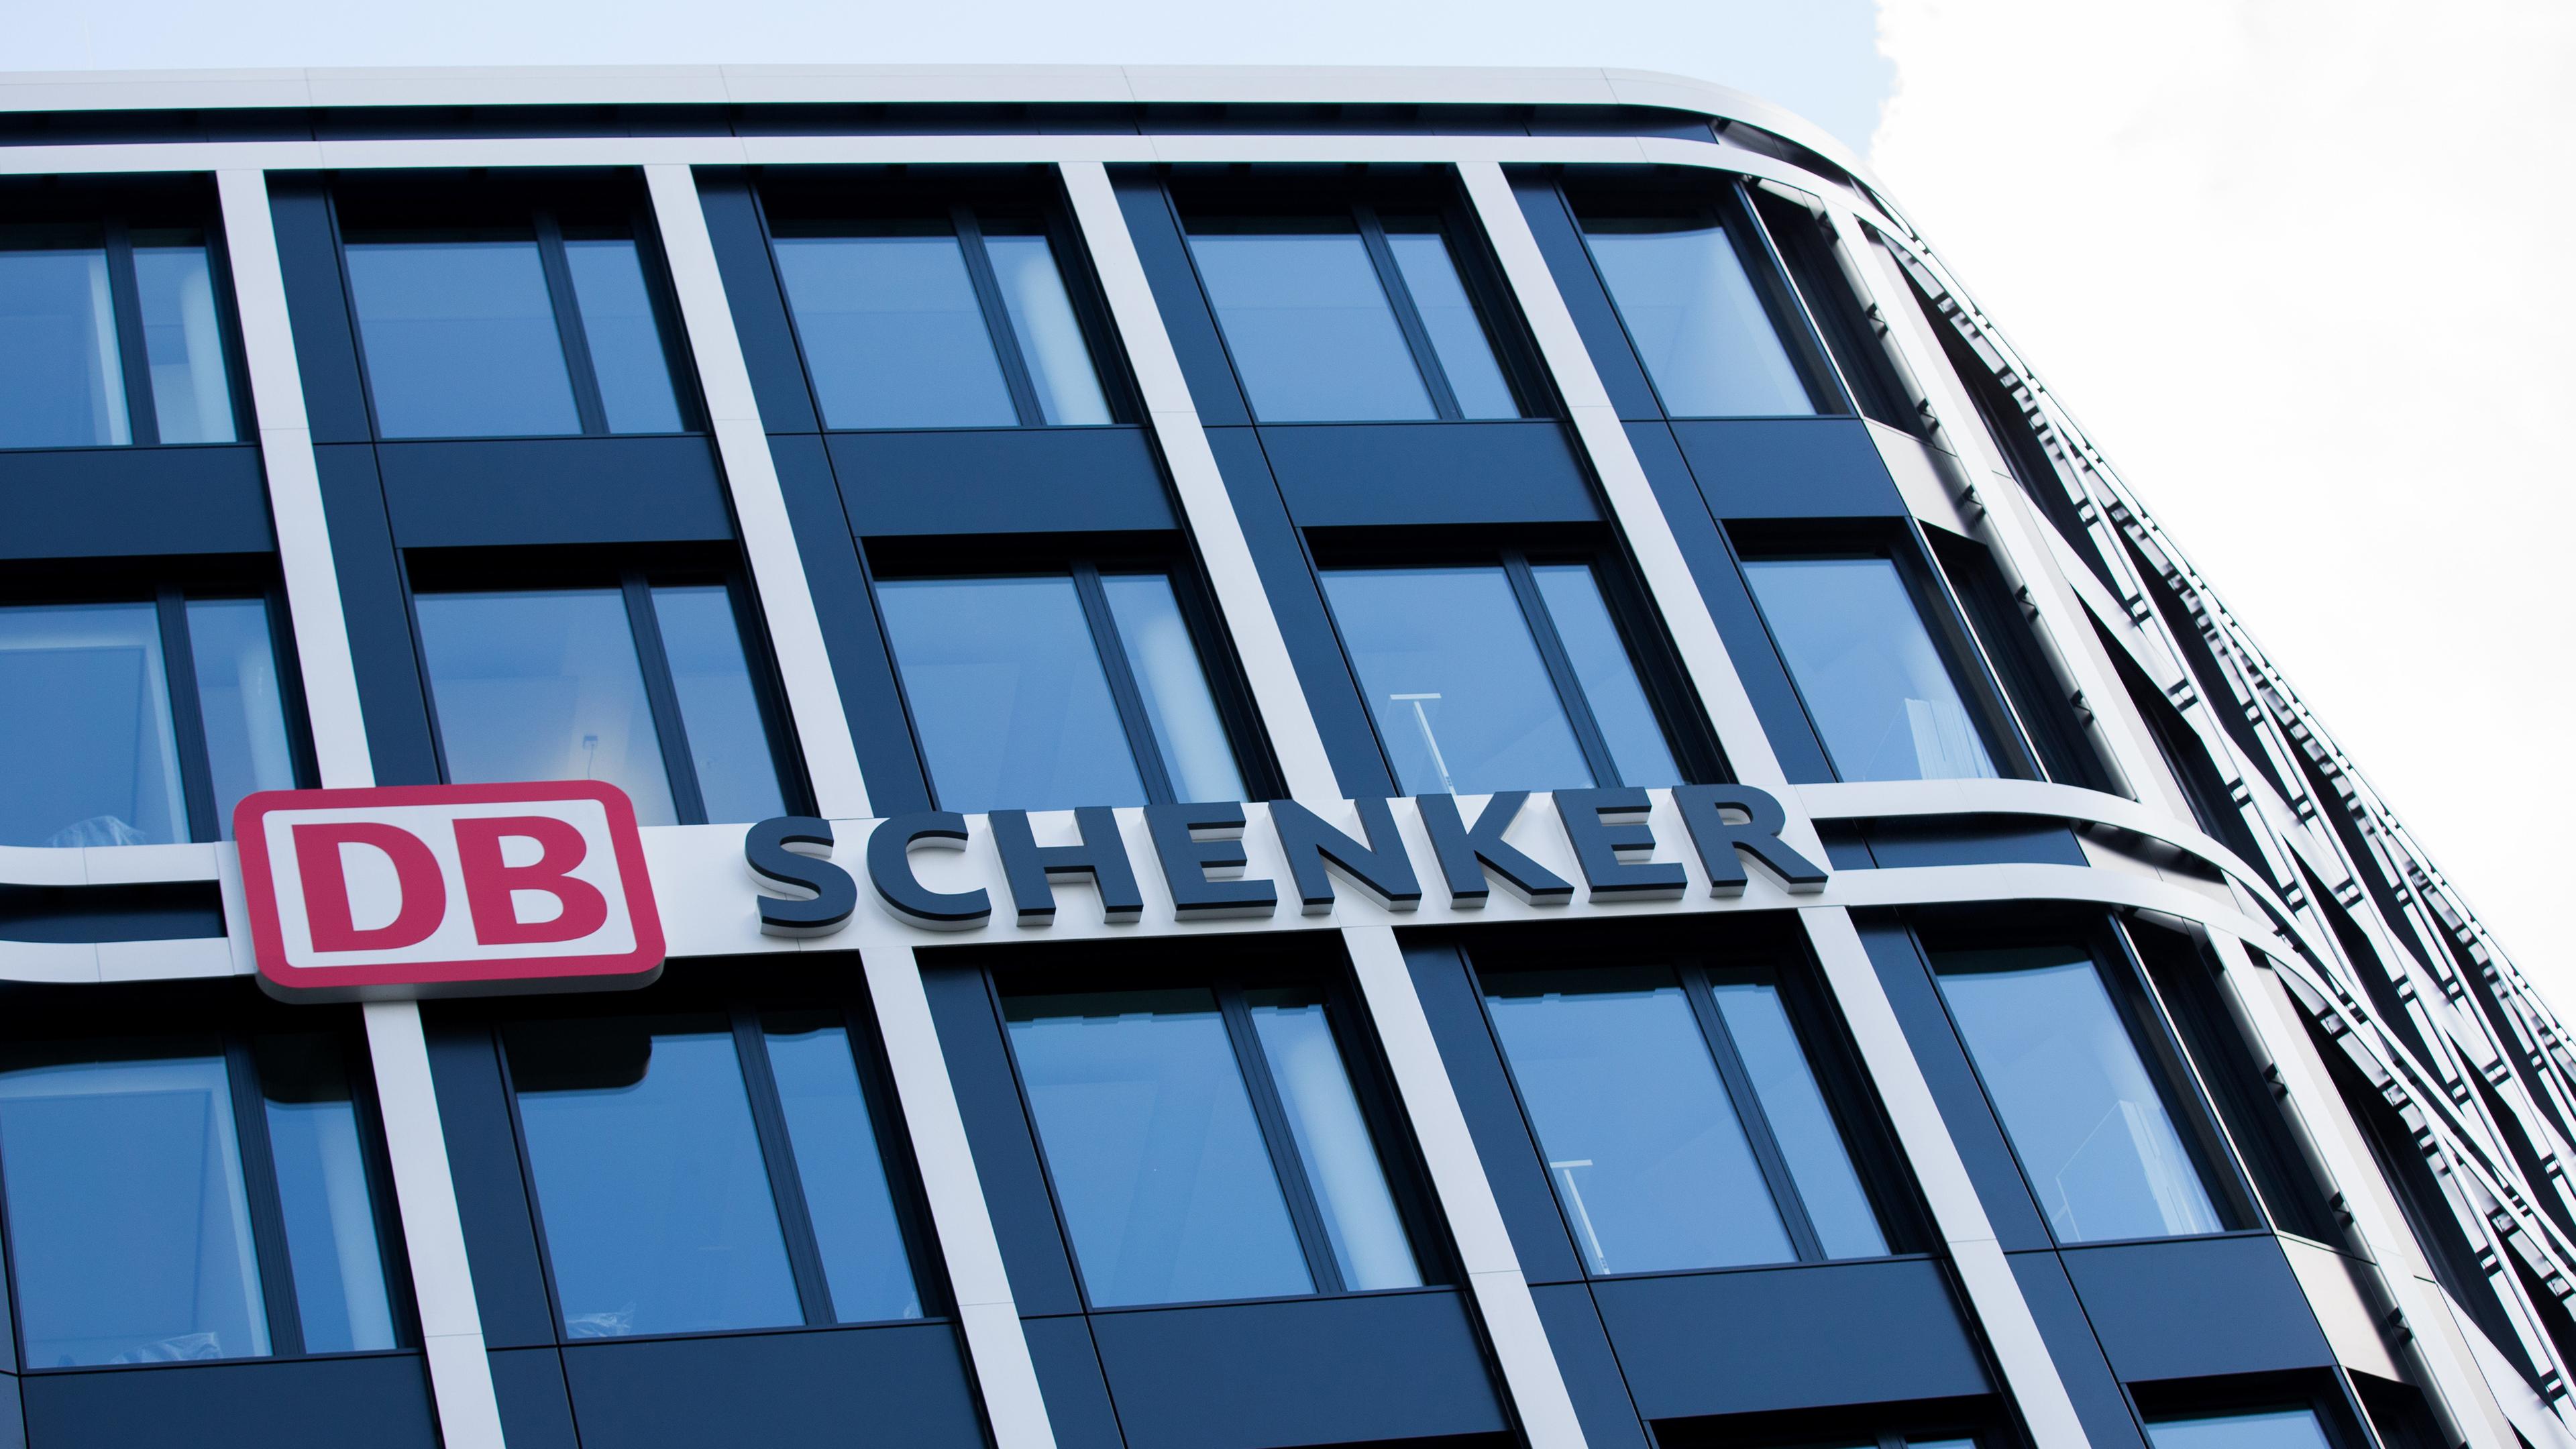 Die Zentrale von DB Schenker, der Logistiktochter der Deutschen Bahn, aufgenommen am 03.05.2016